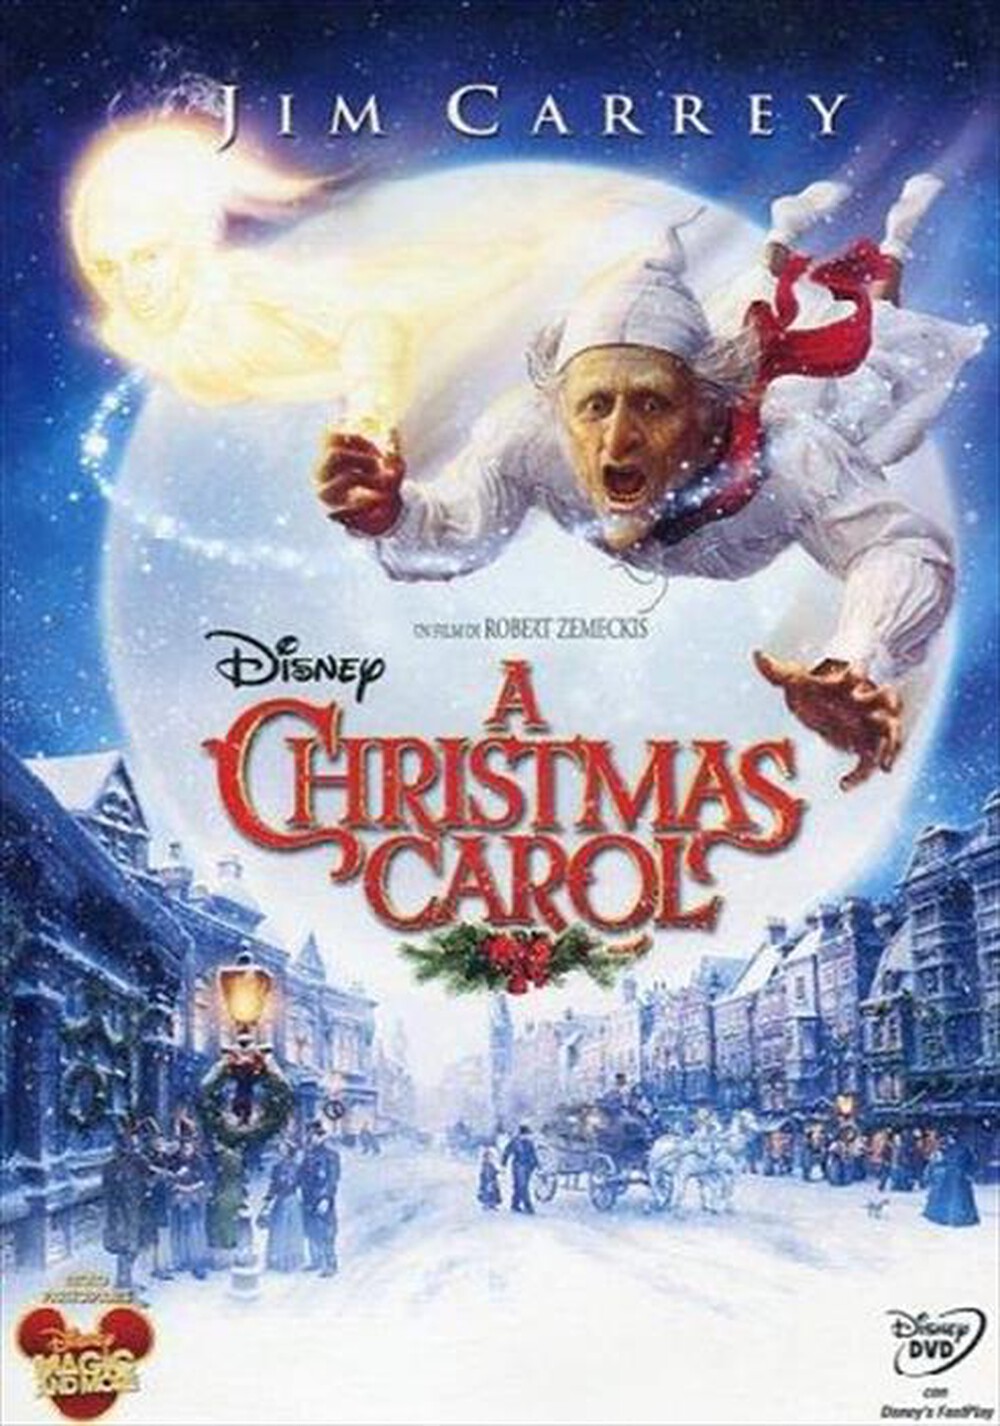 "WALT DISNEY - Christmas Carol (A) (2009) - "